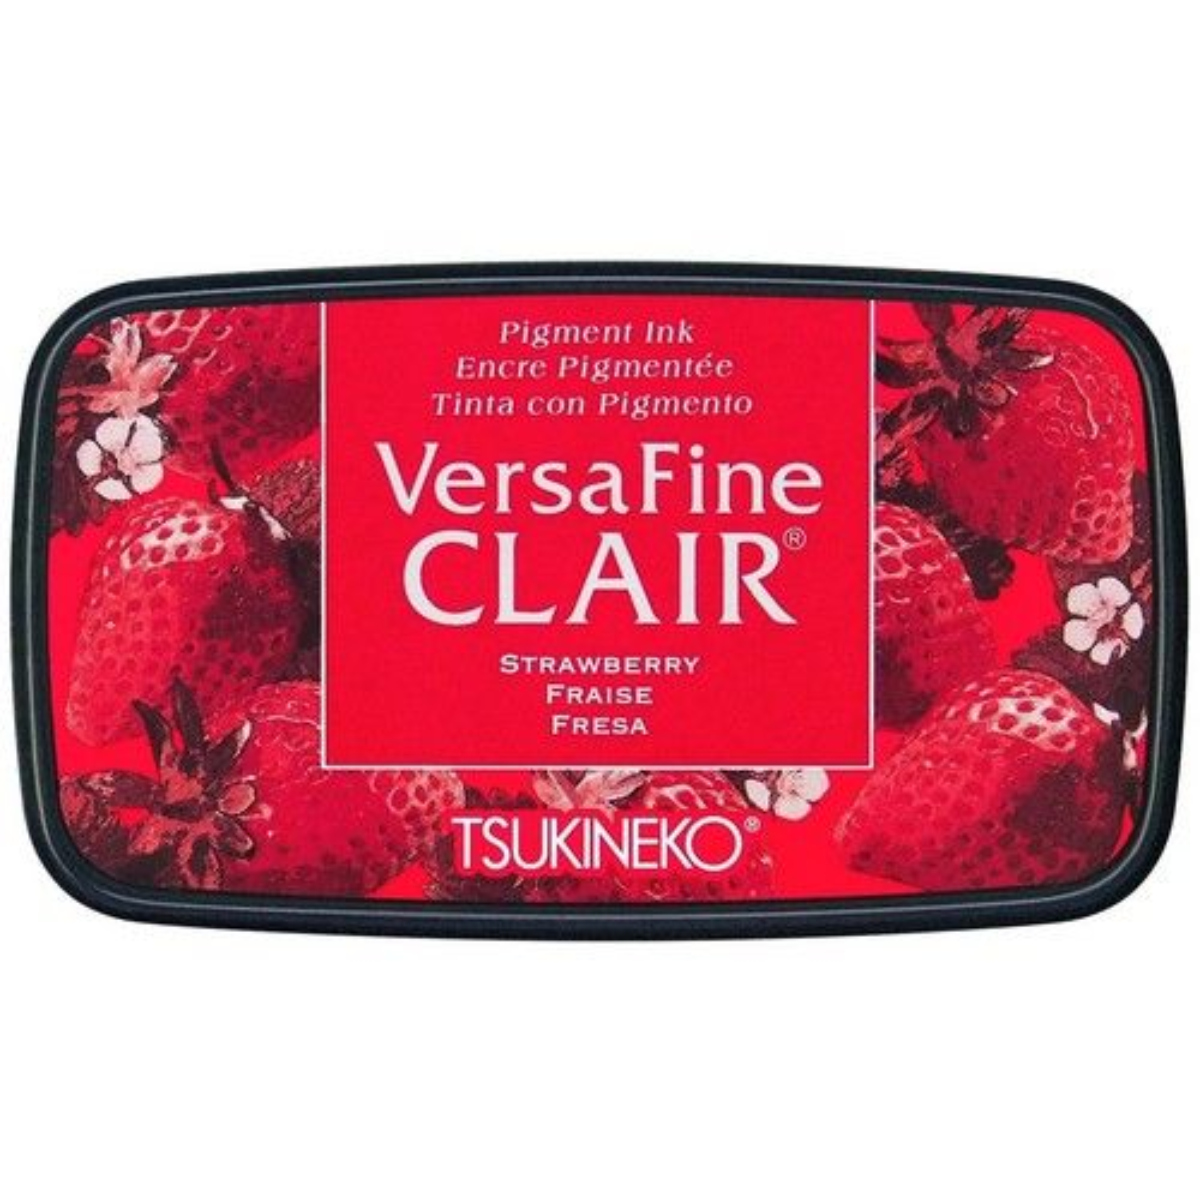 VersaFine Clair – Strawberry